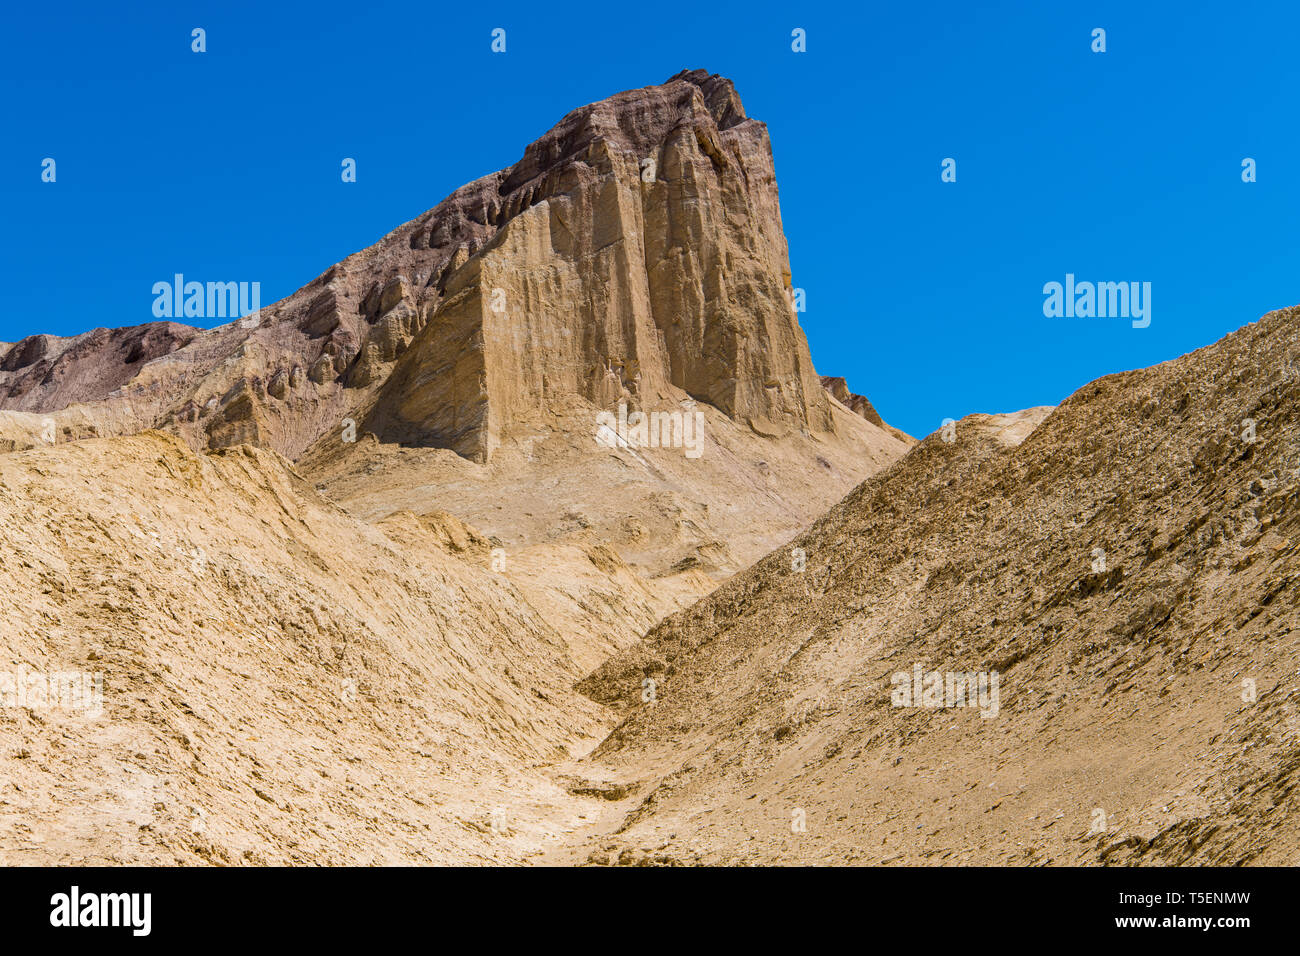 Un high desert en crête avec des falaises abruptes se dresse au-dessus d'un paysage de désert aride, golden - Golden Canyon dans Death Valley National Park Banque D'Images